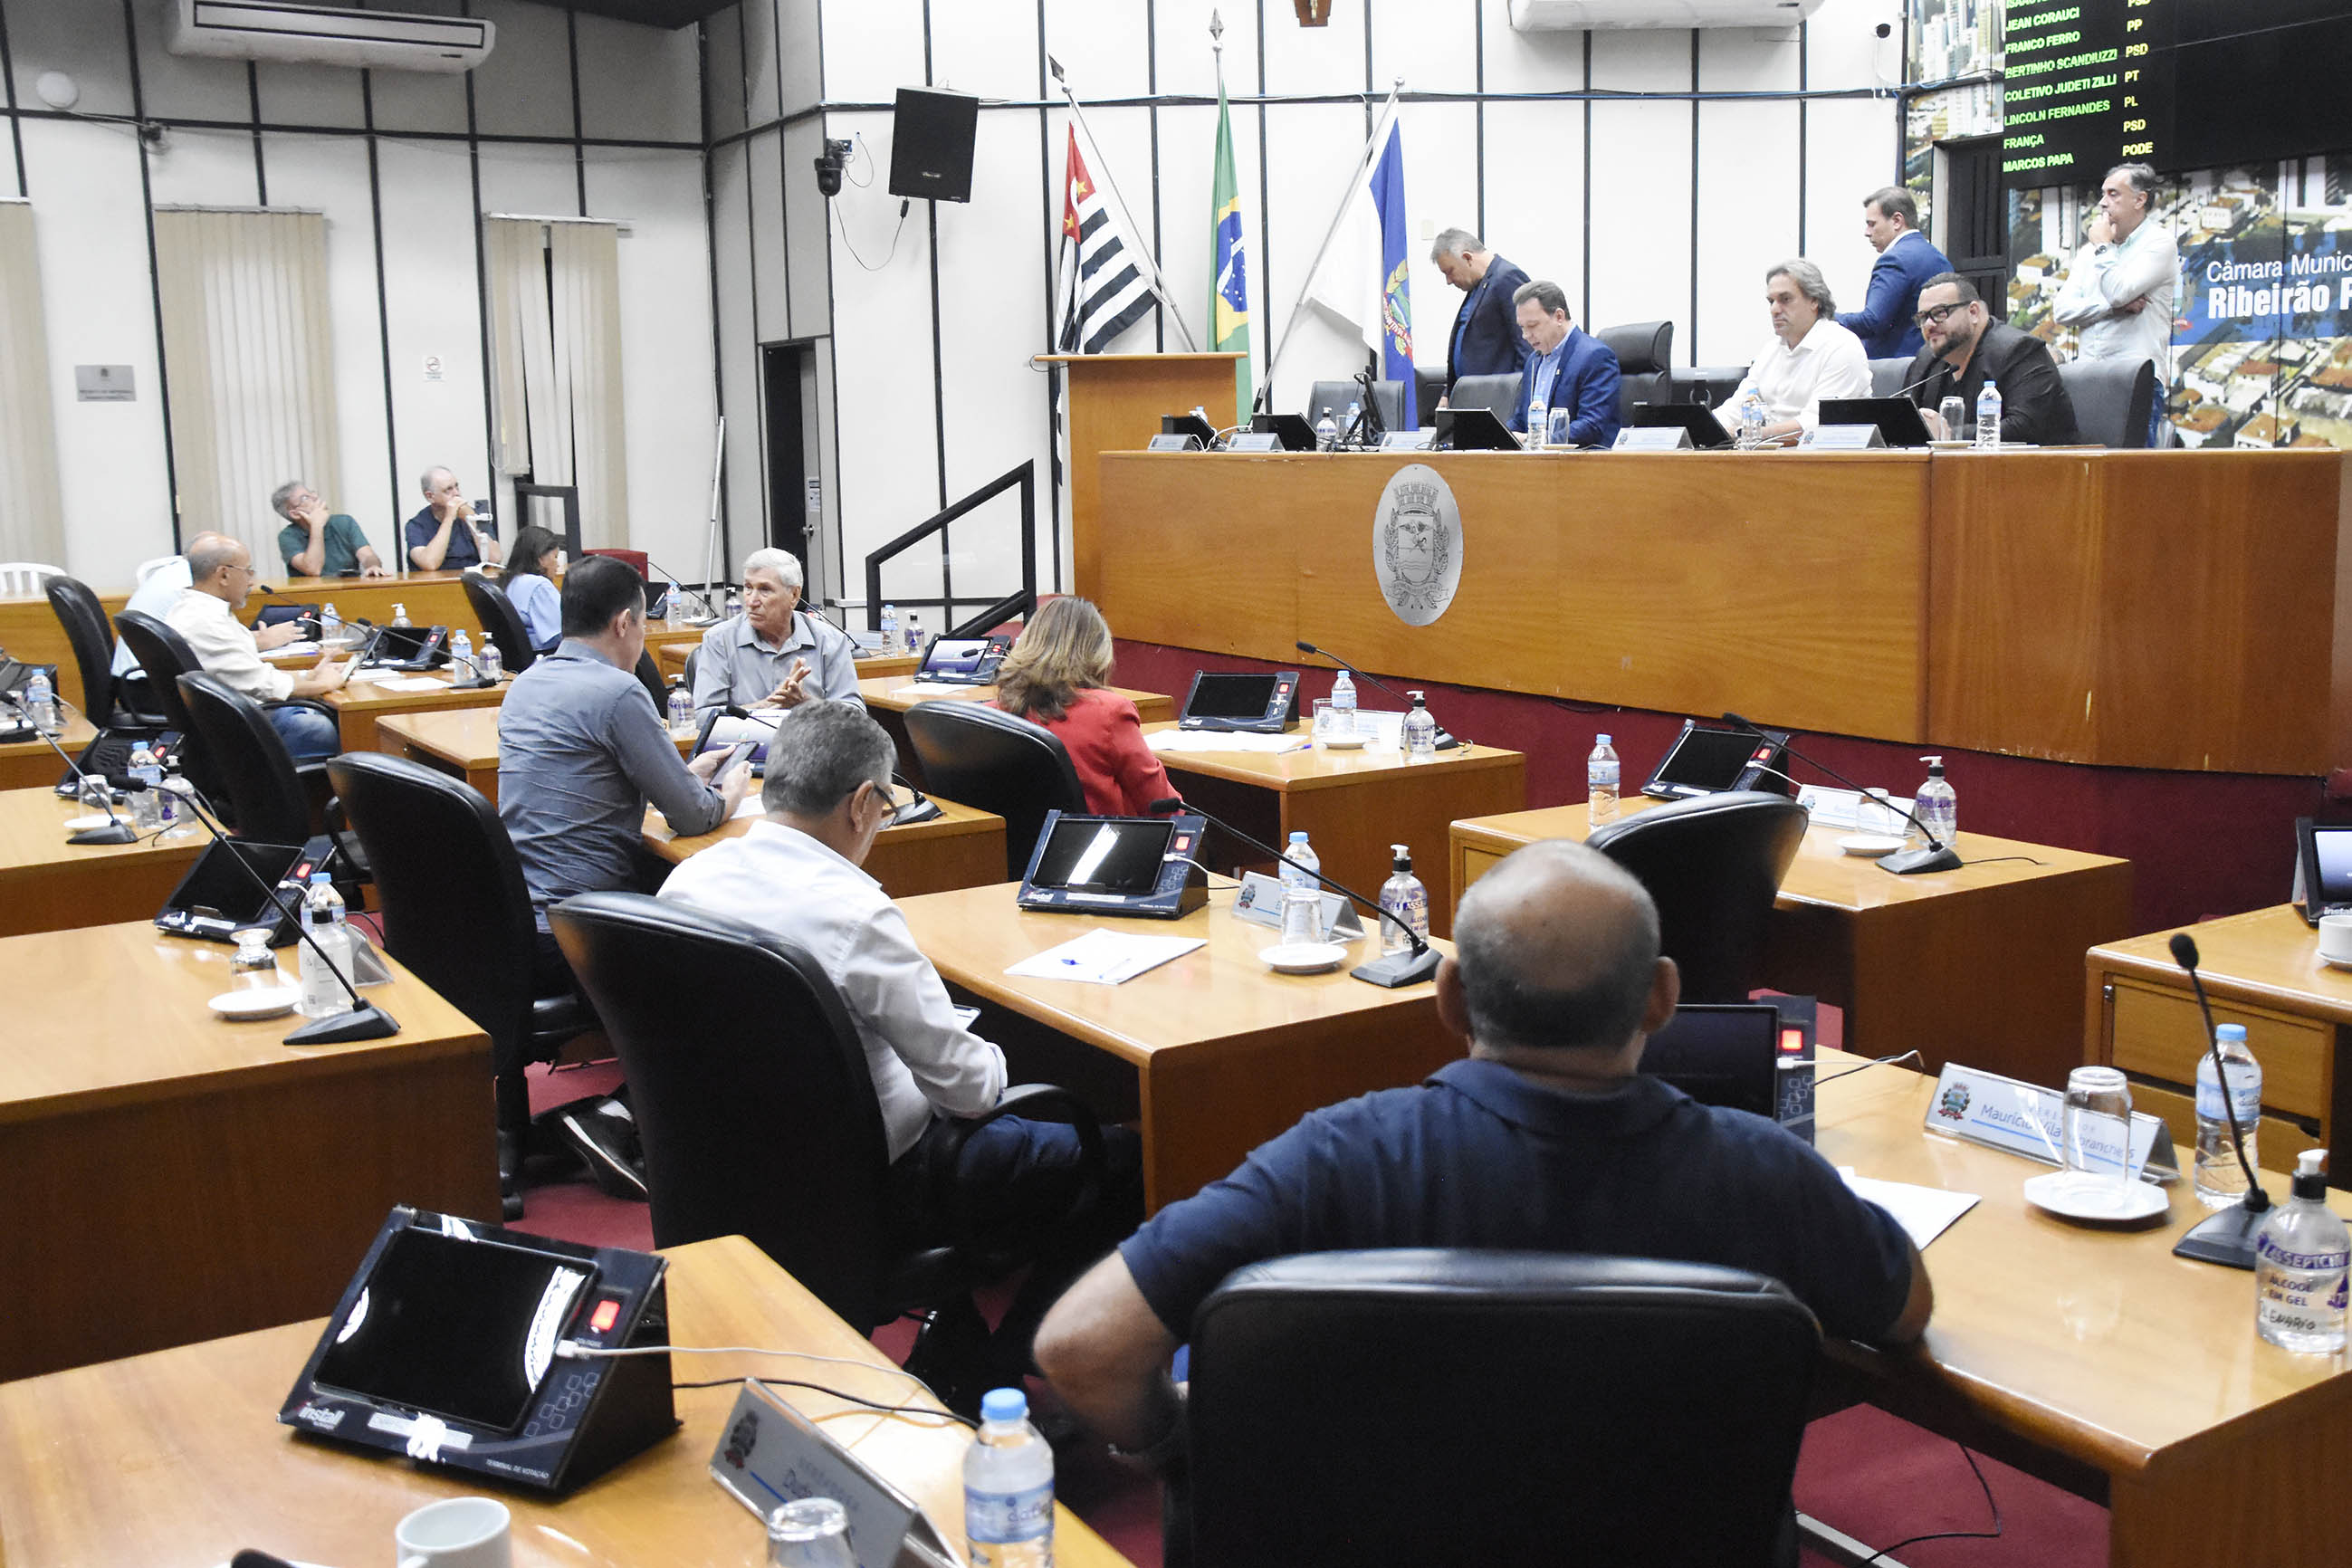 Imagem aberta do Plenário com a Mesa Diretora de frente e outros vereadores de costas